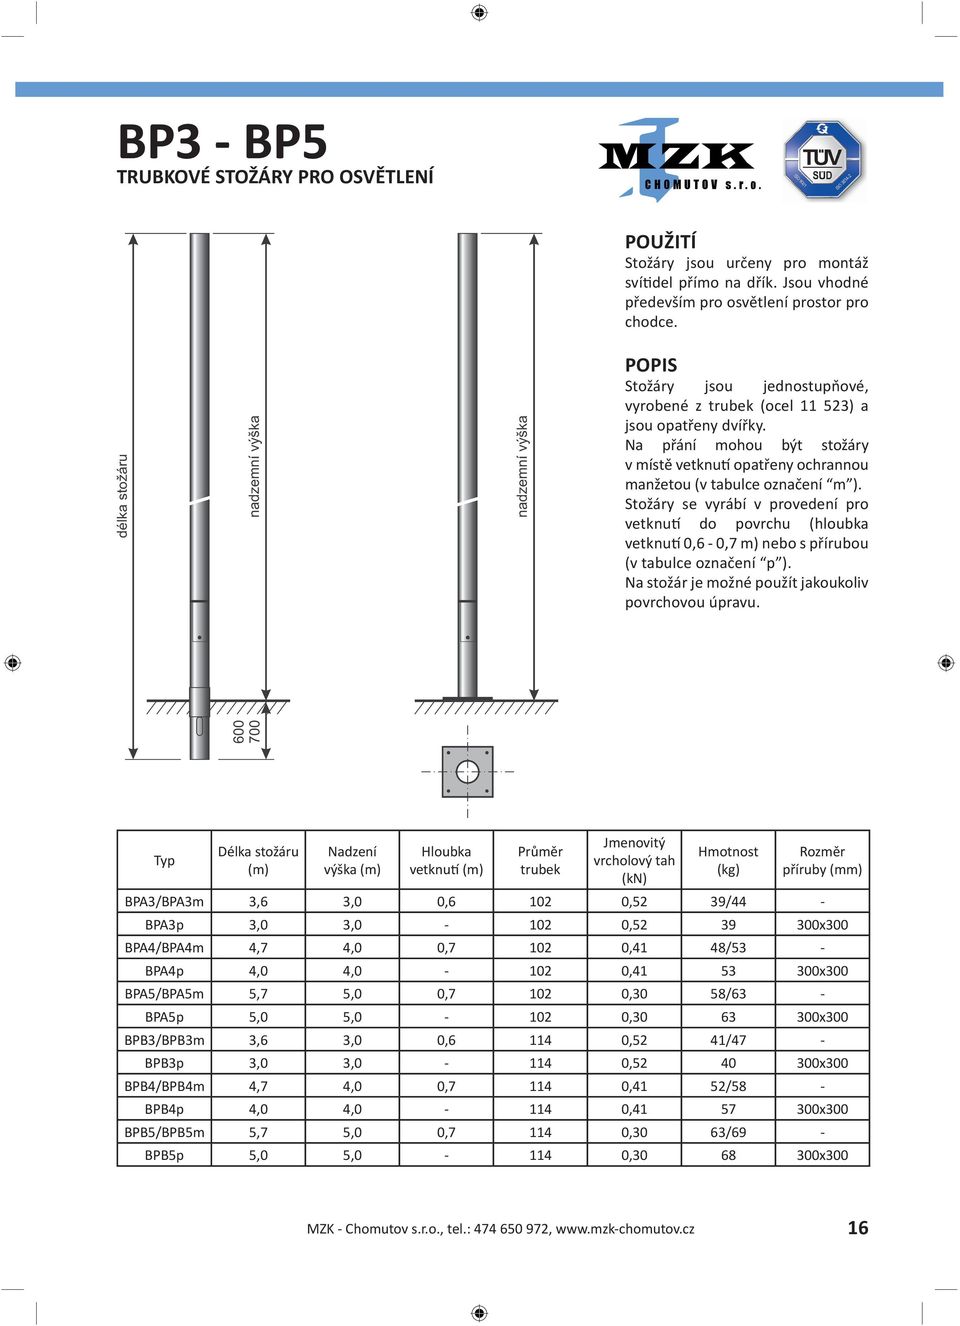 Stožáry se vyrábí v provedení pro vetknutí do povrchu (hloubka vetknutí 0,6-0,7 m) nebo s přírubou (v tabulce označení p ). Na stožár je možné použít jakoukoliv povrchovou úpravu.